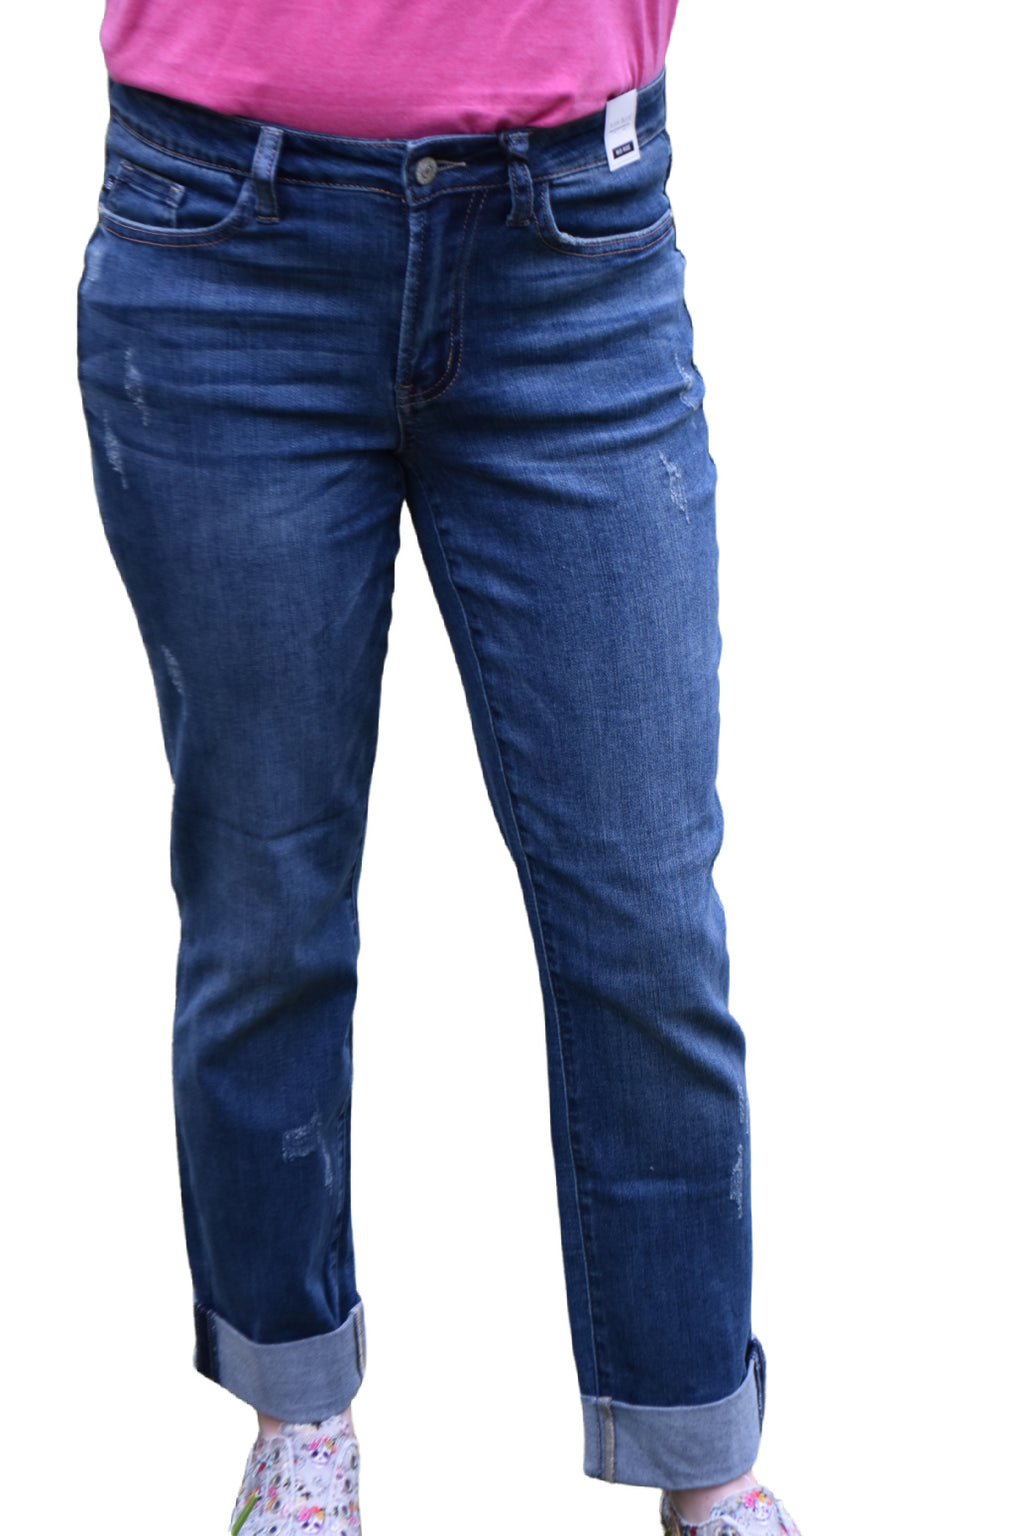 Judy Blue Double Cuff Long Boyfriend Mid-Rise Jeans Style 88357